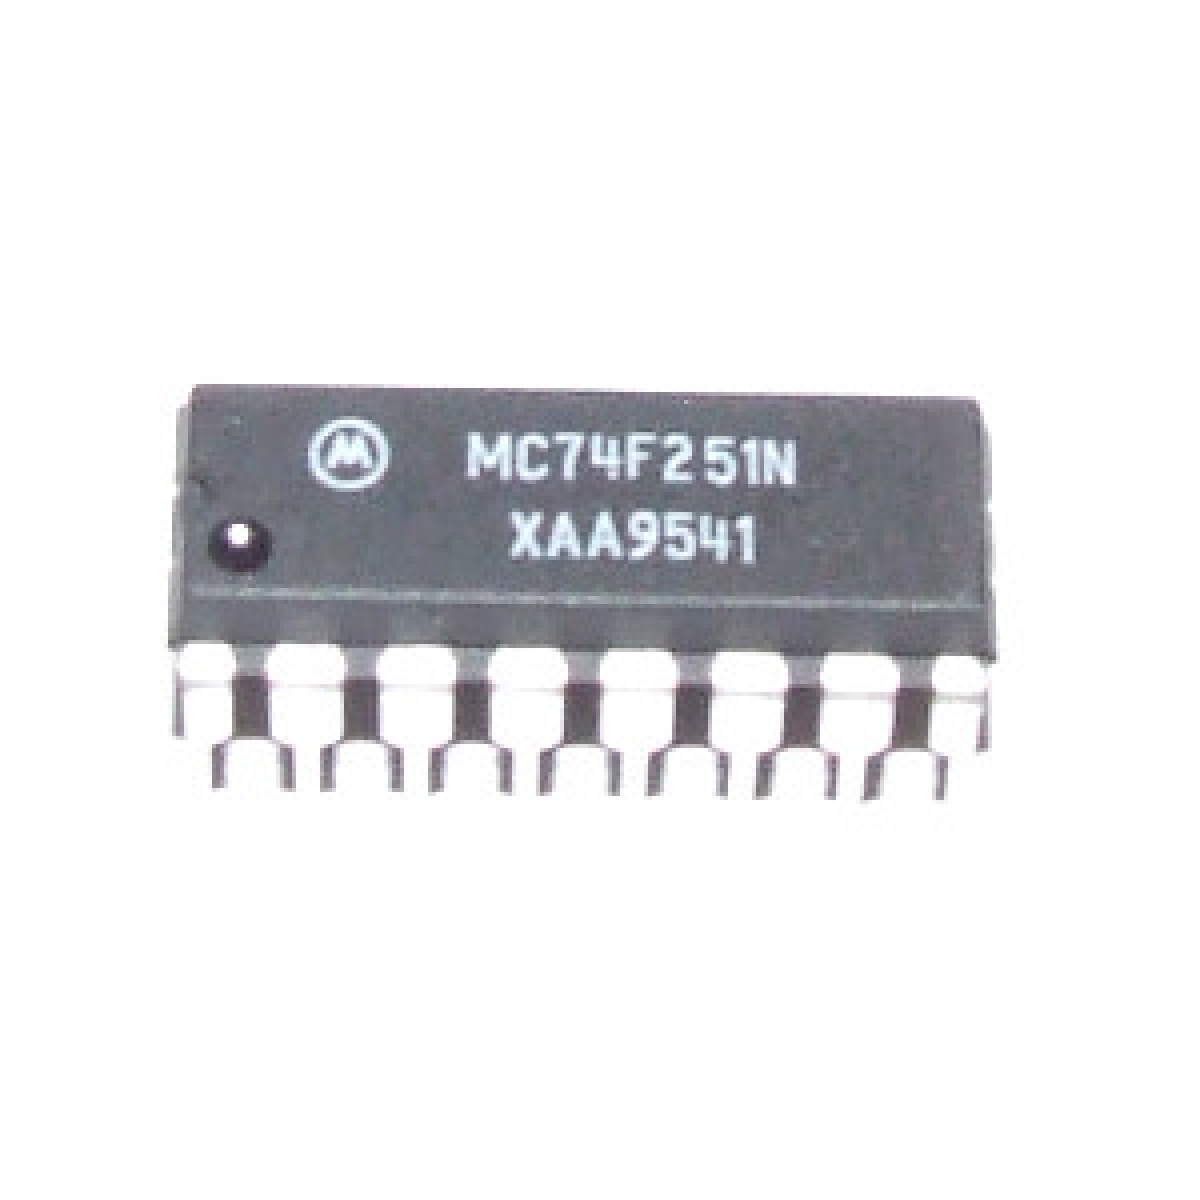 MC74F251N